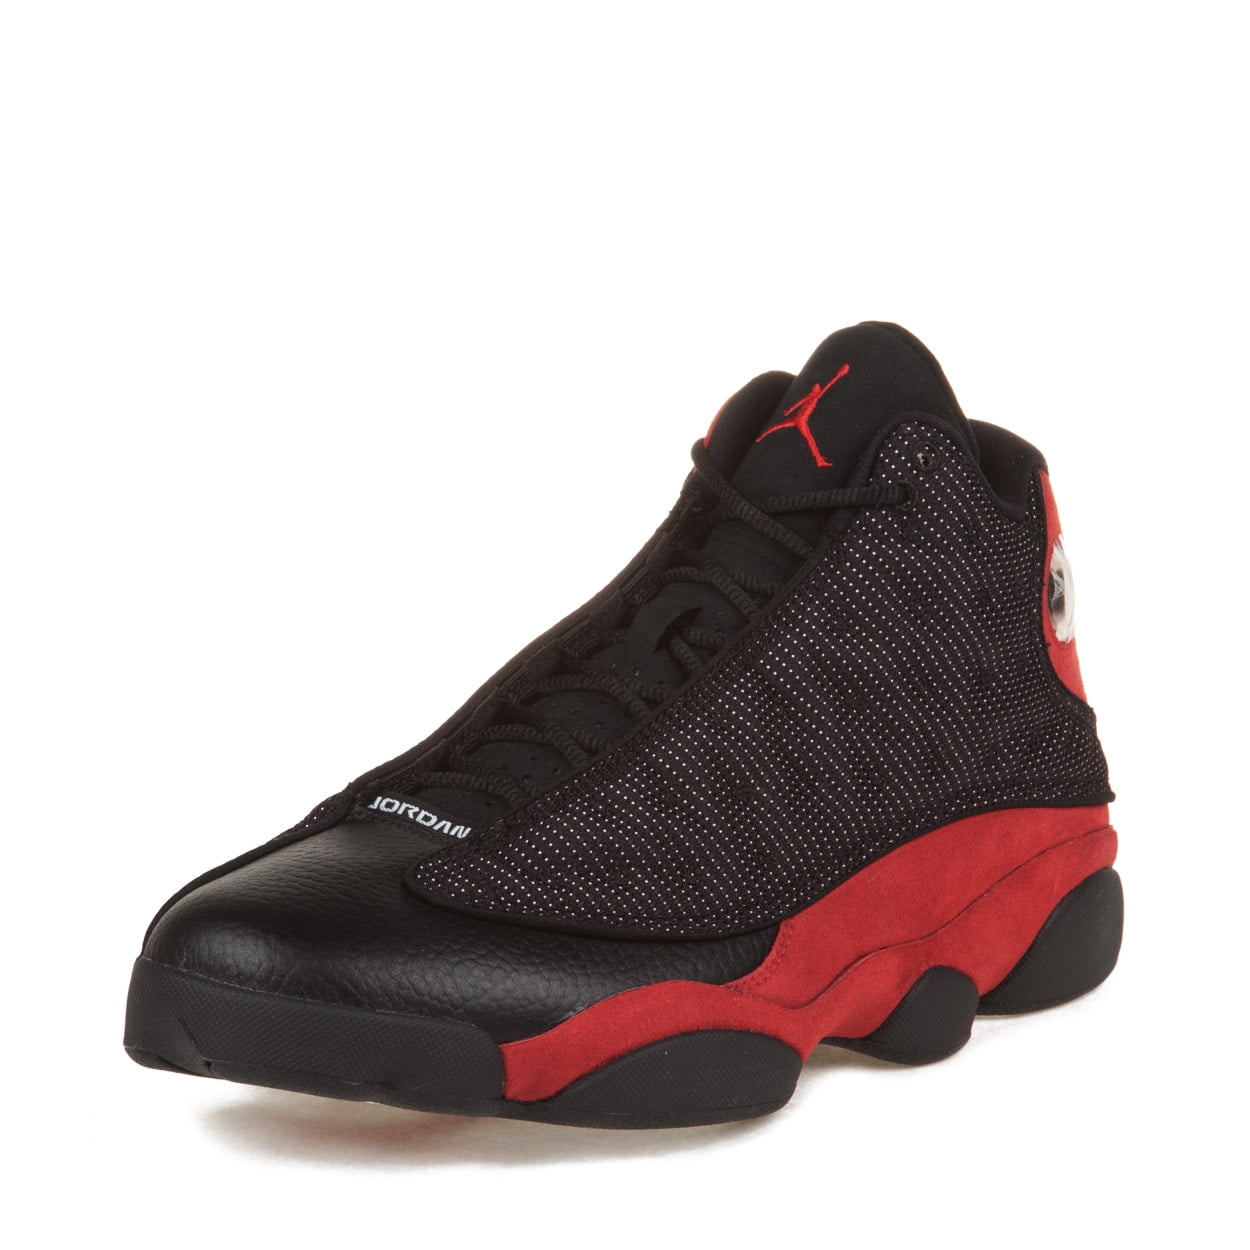 Nike Mens Air Jordan Retro 13 "Bred" Black/Varsity Red 414571-010